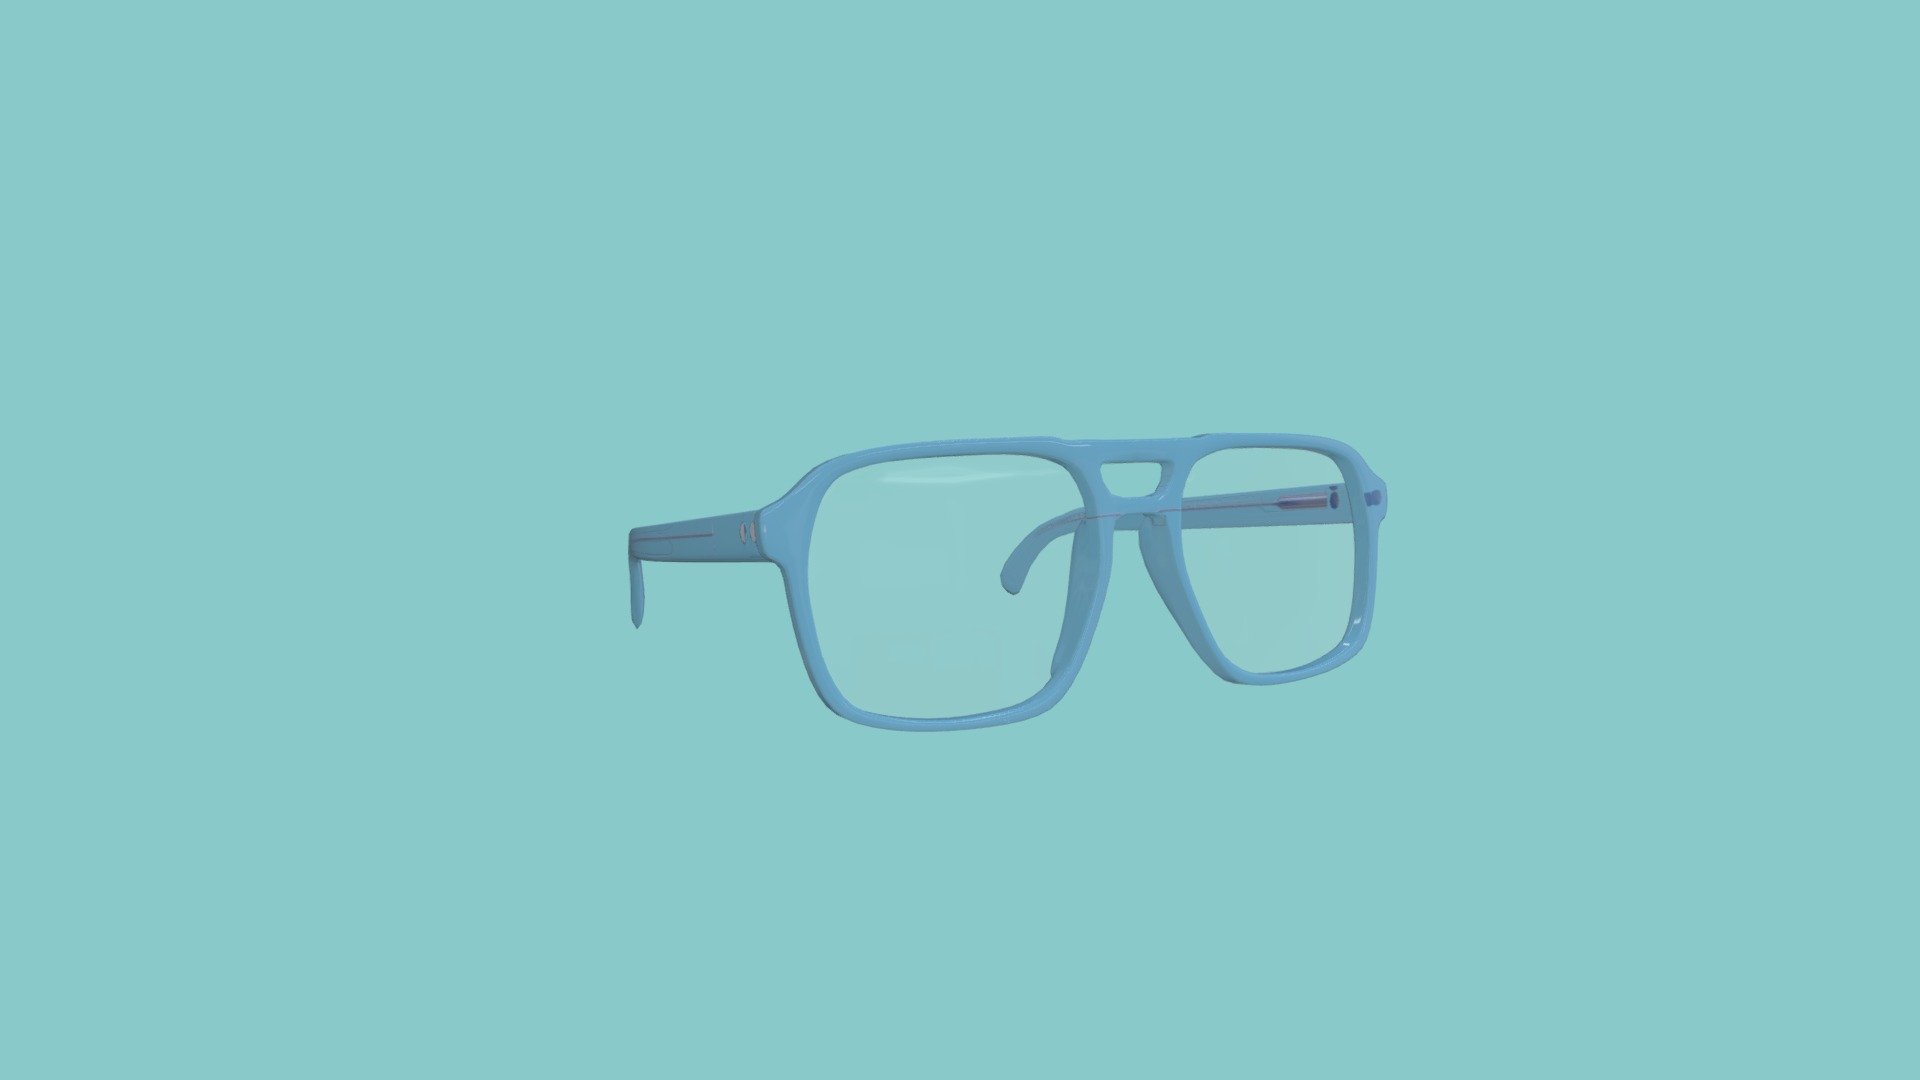 a simple 3d model eye glass frame 
3d model in blender - Eye glasses transparent - 3D model by Mahesh_Goud_mrduniya (@Mahesh_goud0286) 3d model